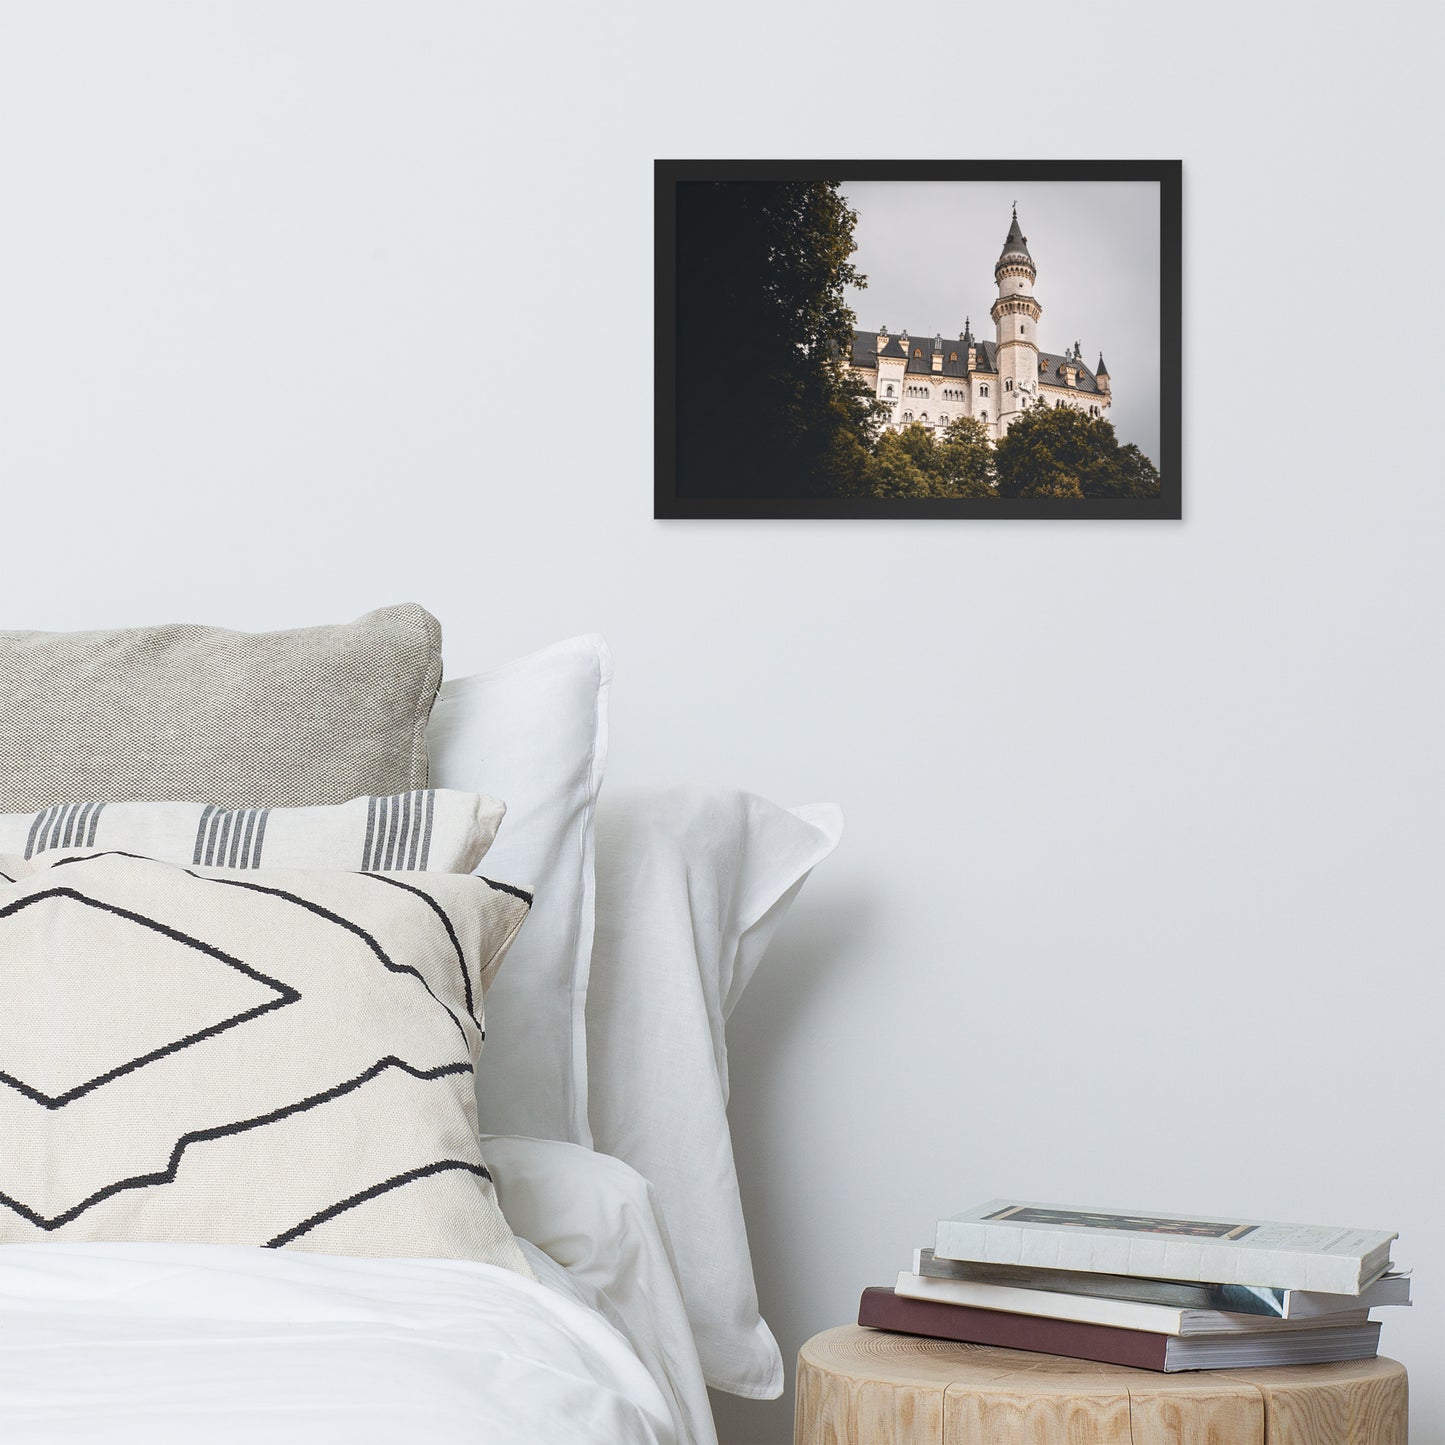 Bild Schloss Neuschwanstein mit Rahmen versehen